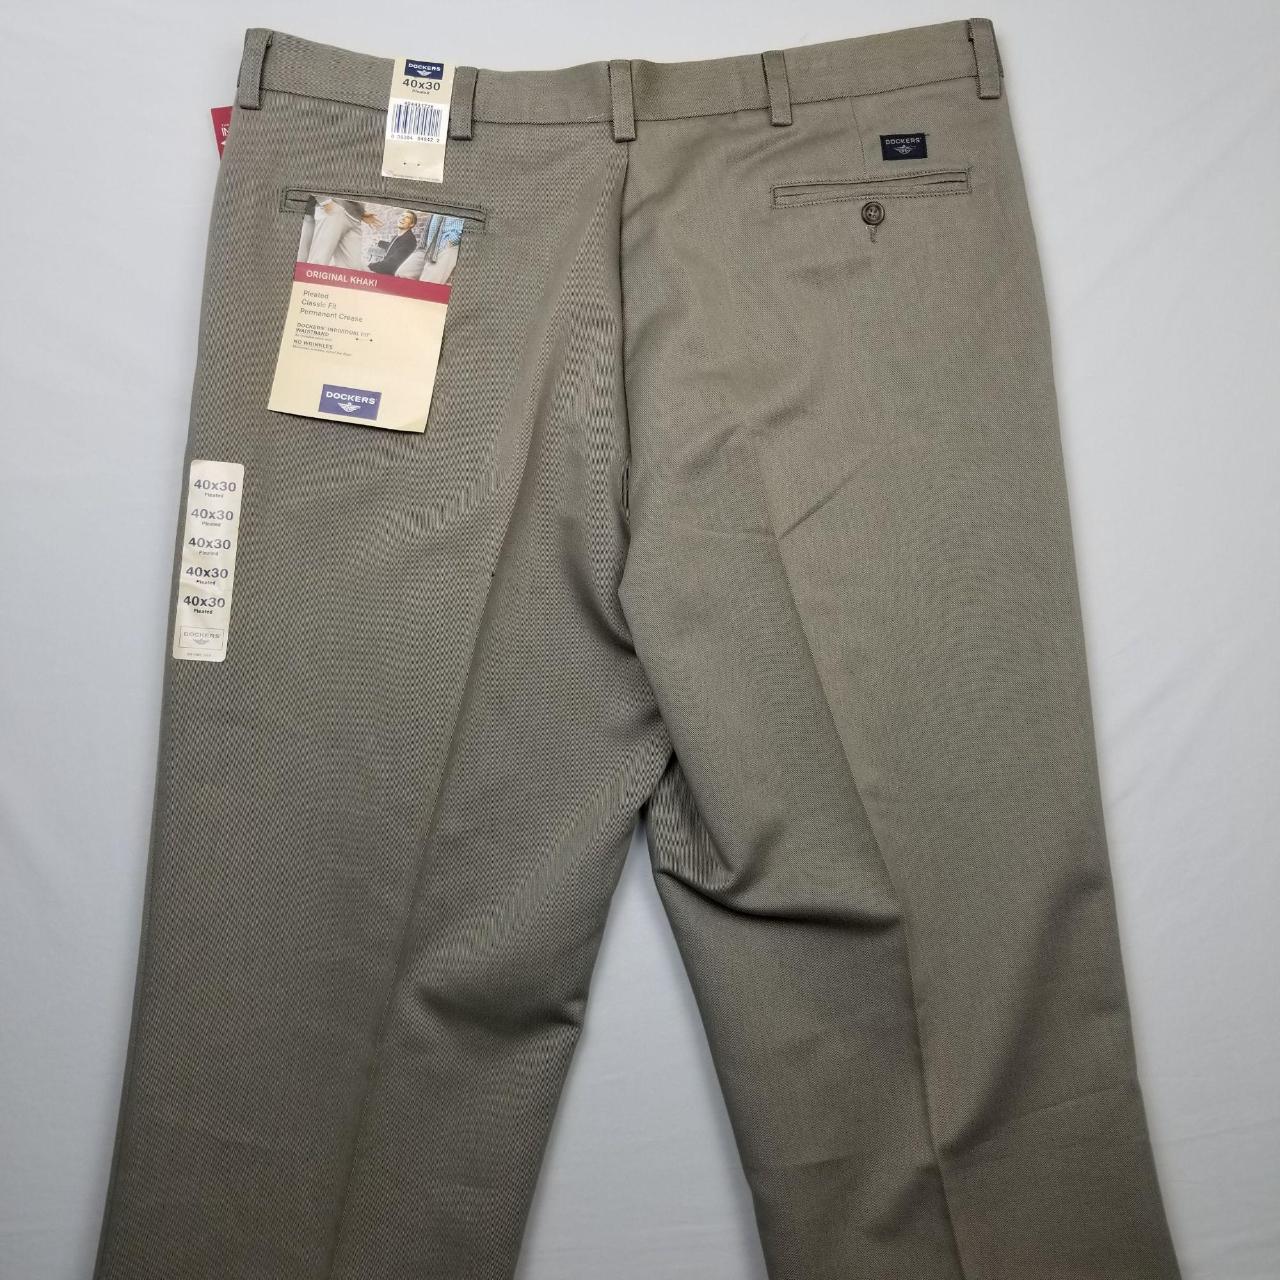 Dockers Premium Pants Relaxed Fit Trouser Men's Size... - Depop